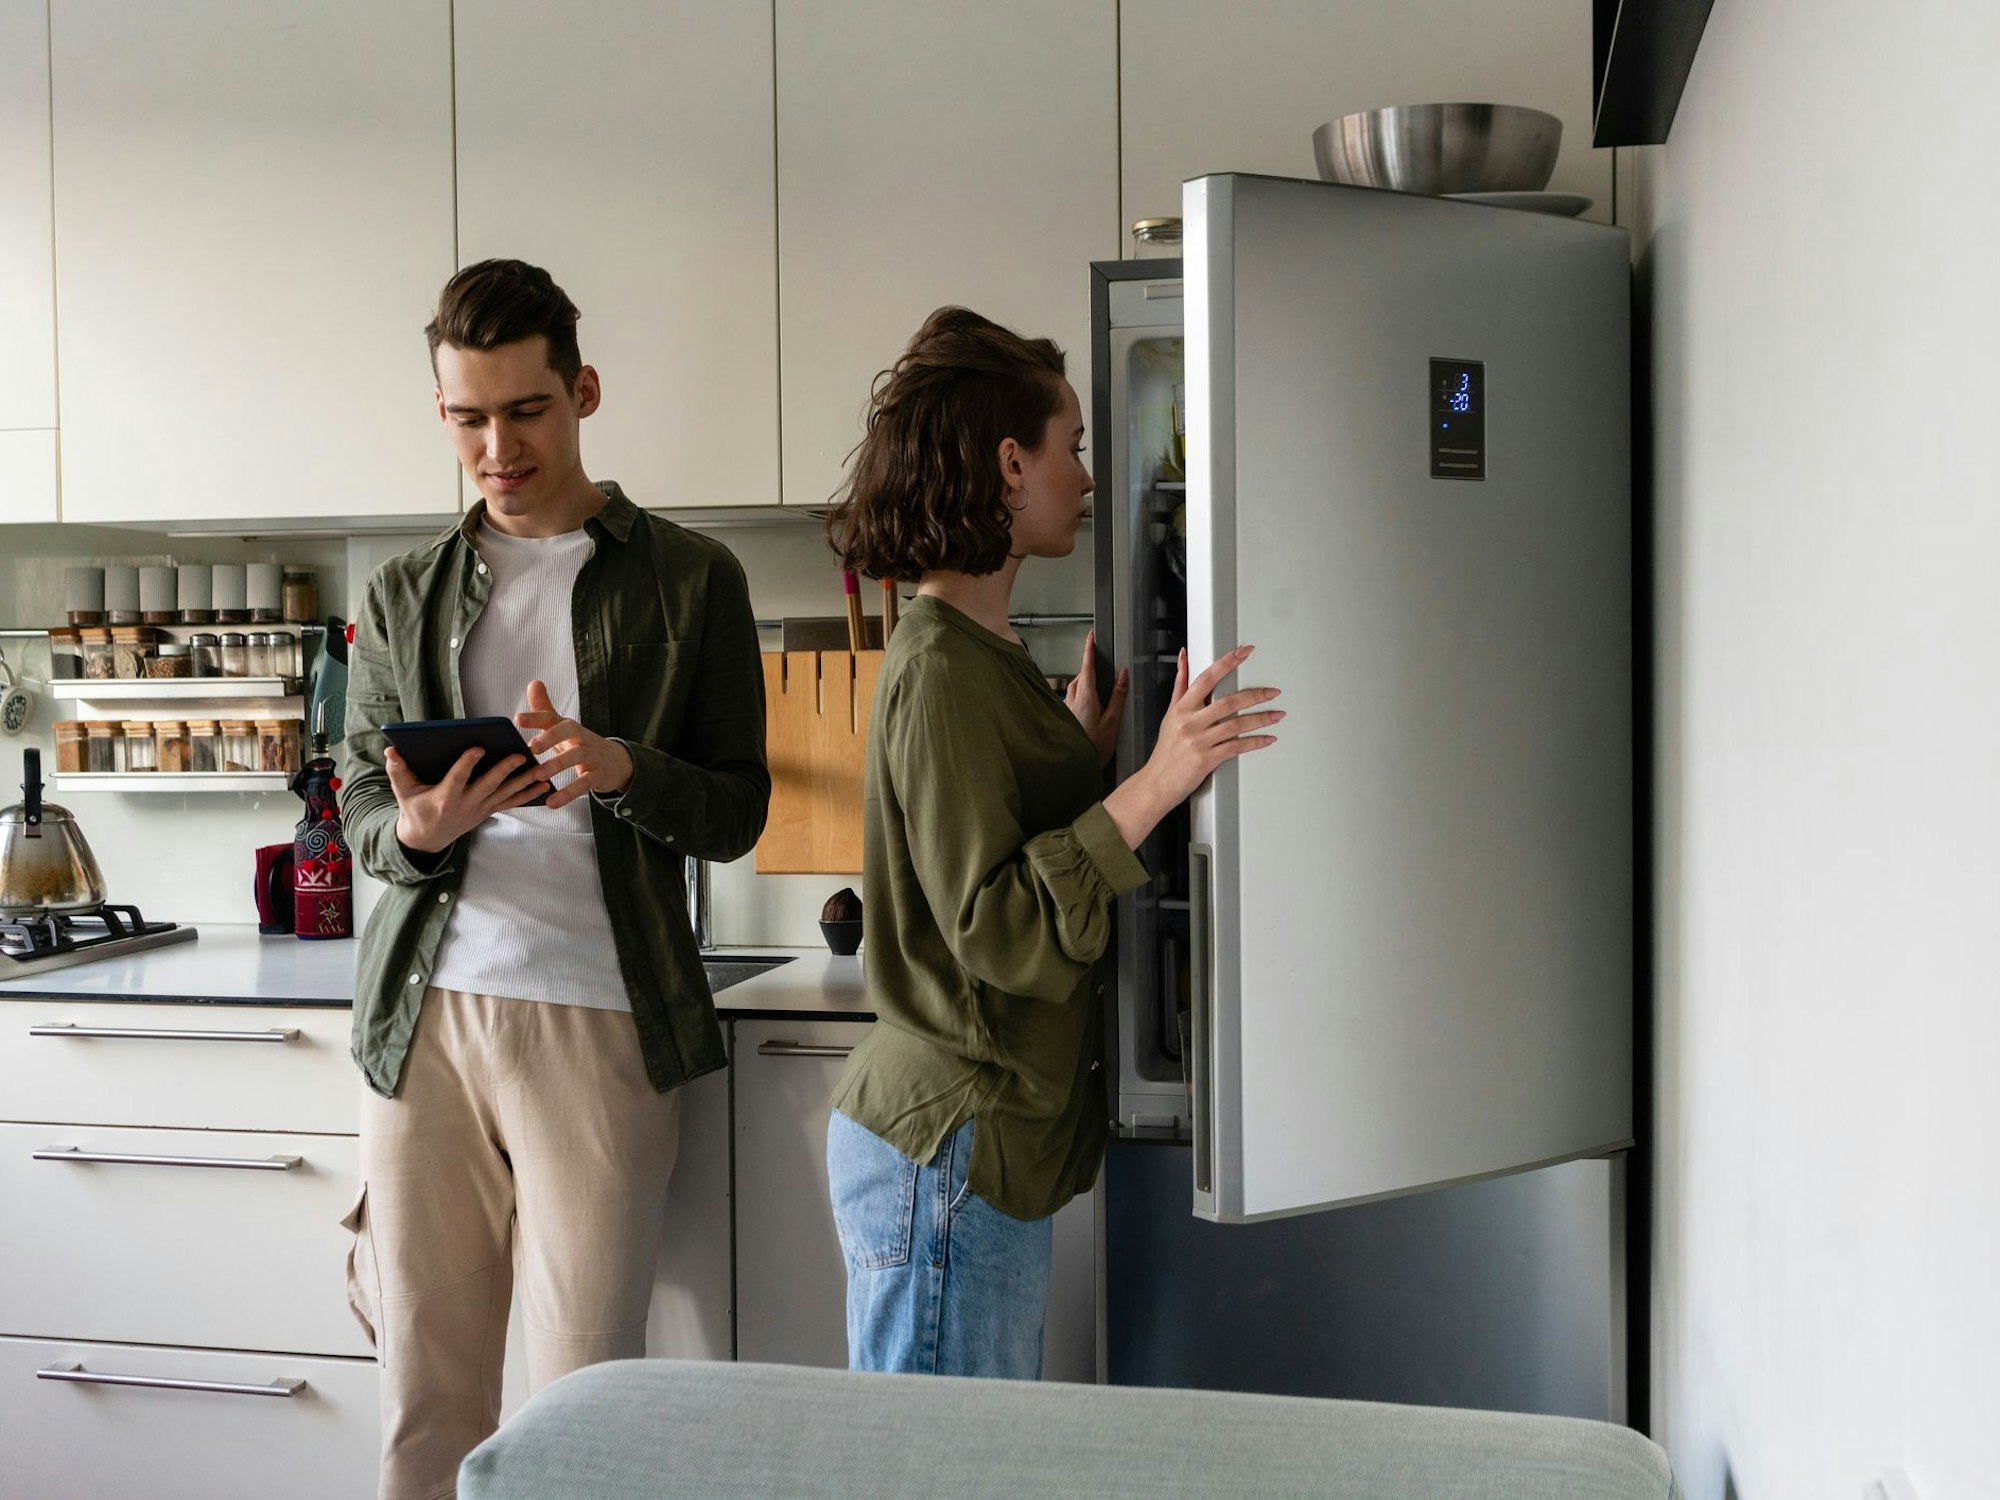 Auf dem Foto sieht man eine Frau einen Kühlschrank öffnen, neben ihr steht ein Mann, welcher auf sein Tablet schaut.